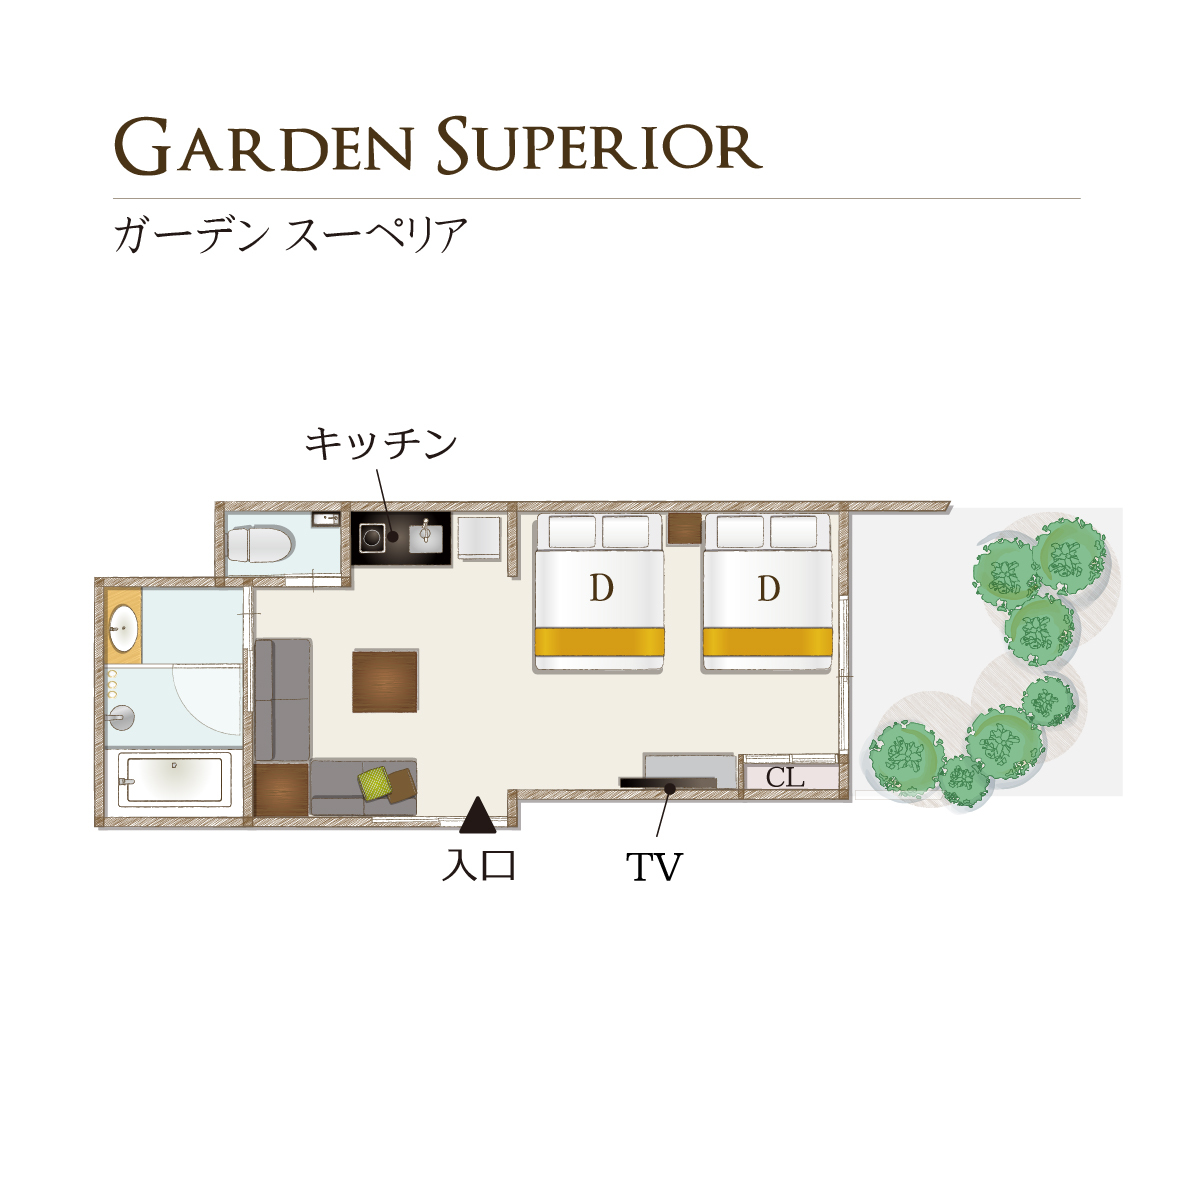 間取り図【ガーデンスーペリア/Garden Superior】